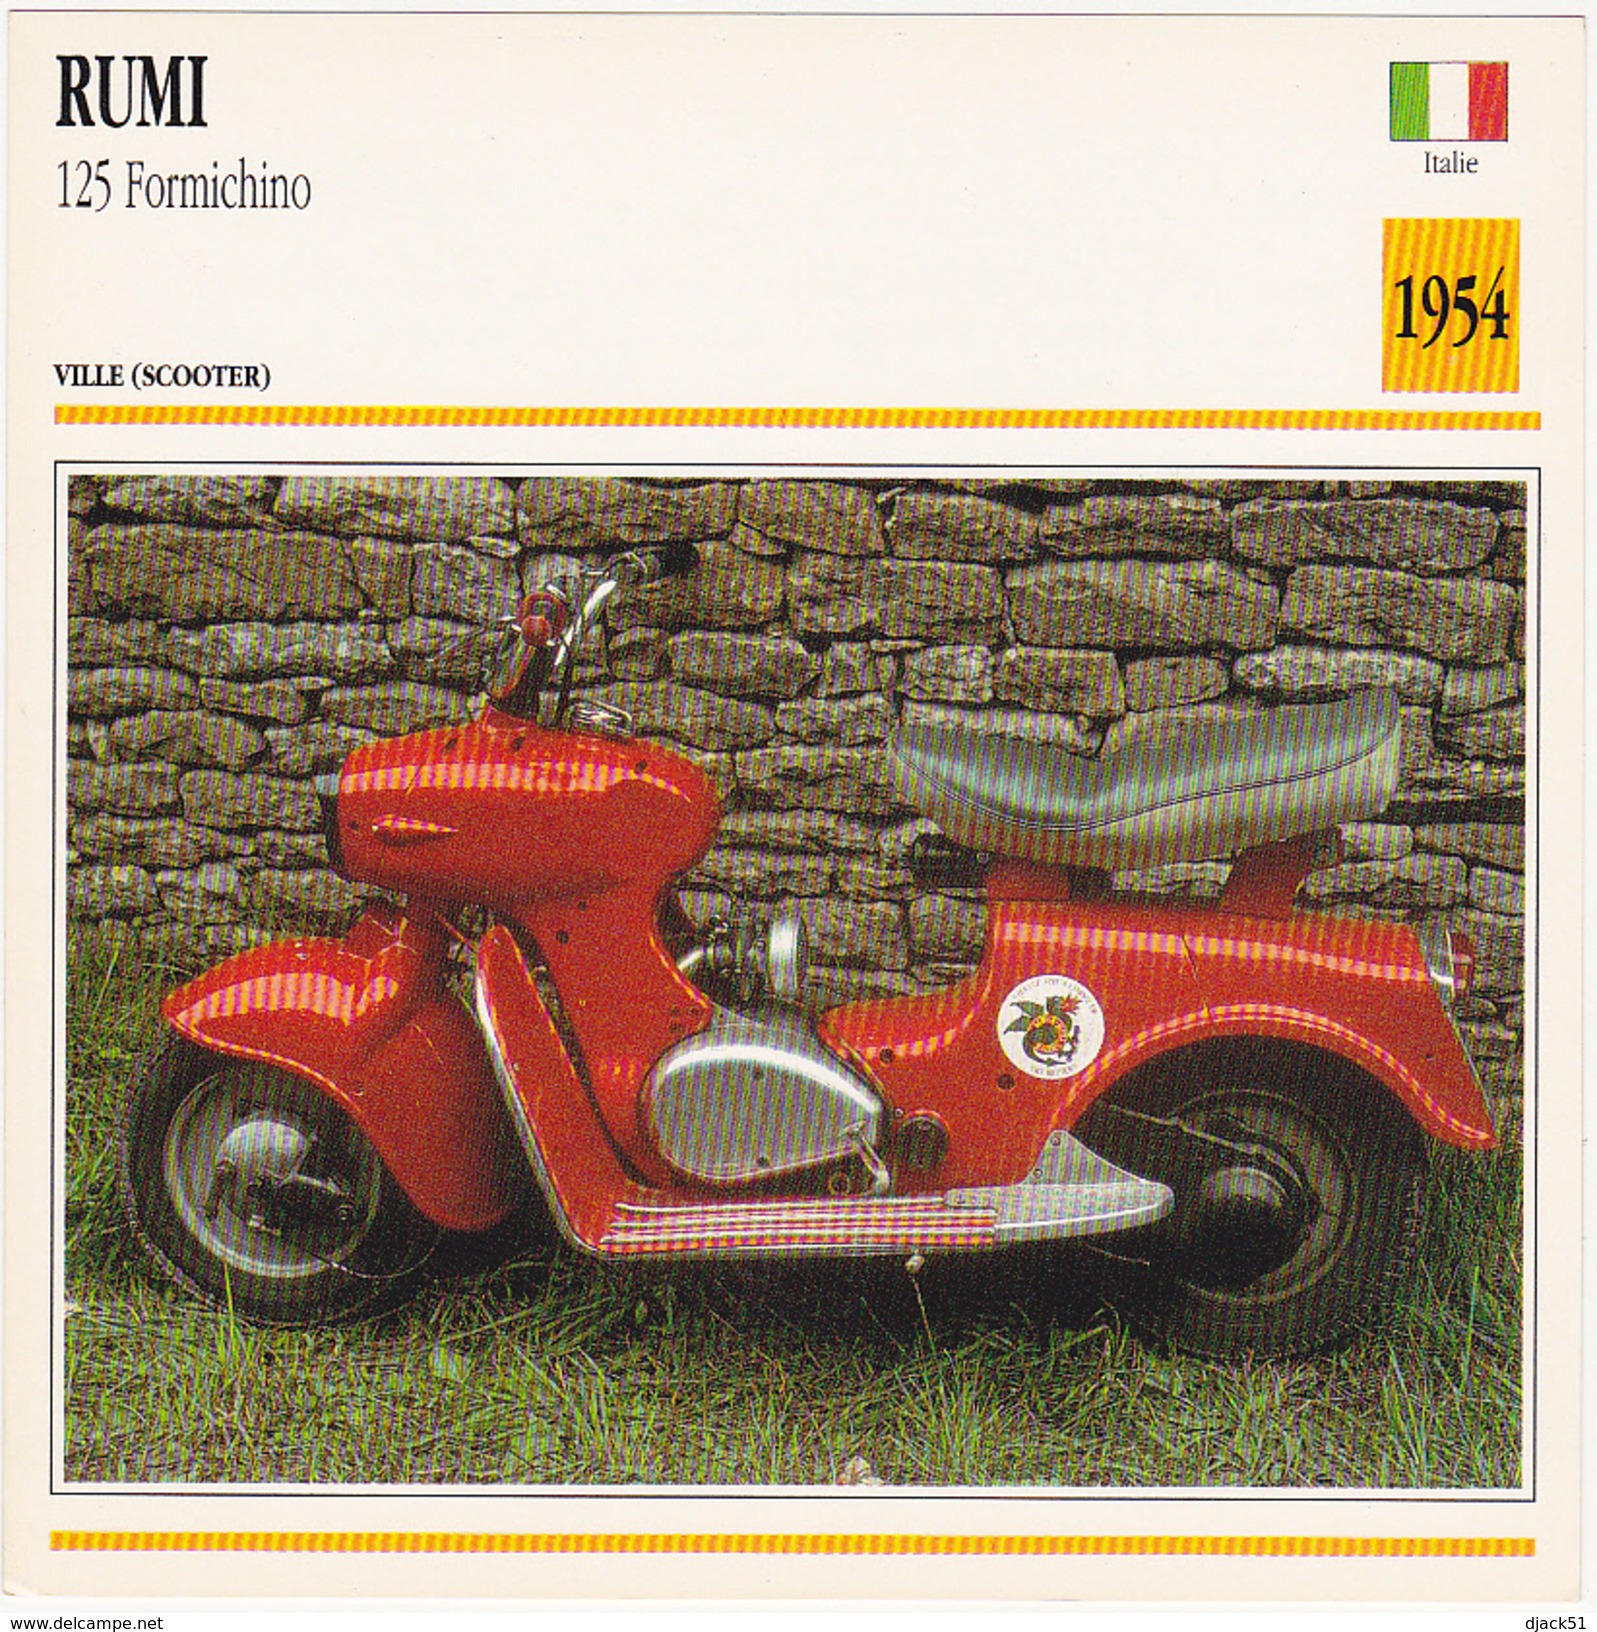 Fiche : MOTO / ITALIE / RUMI 125 Formichino / 1954 - Motos